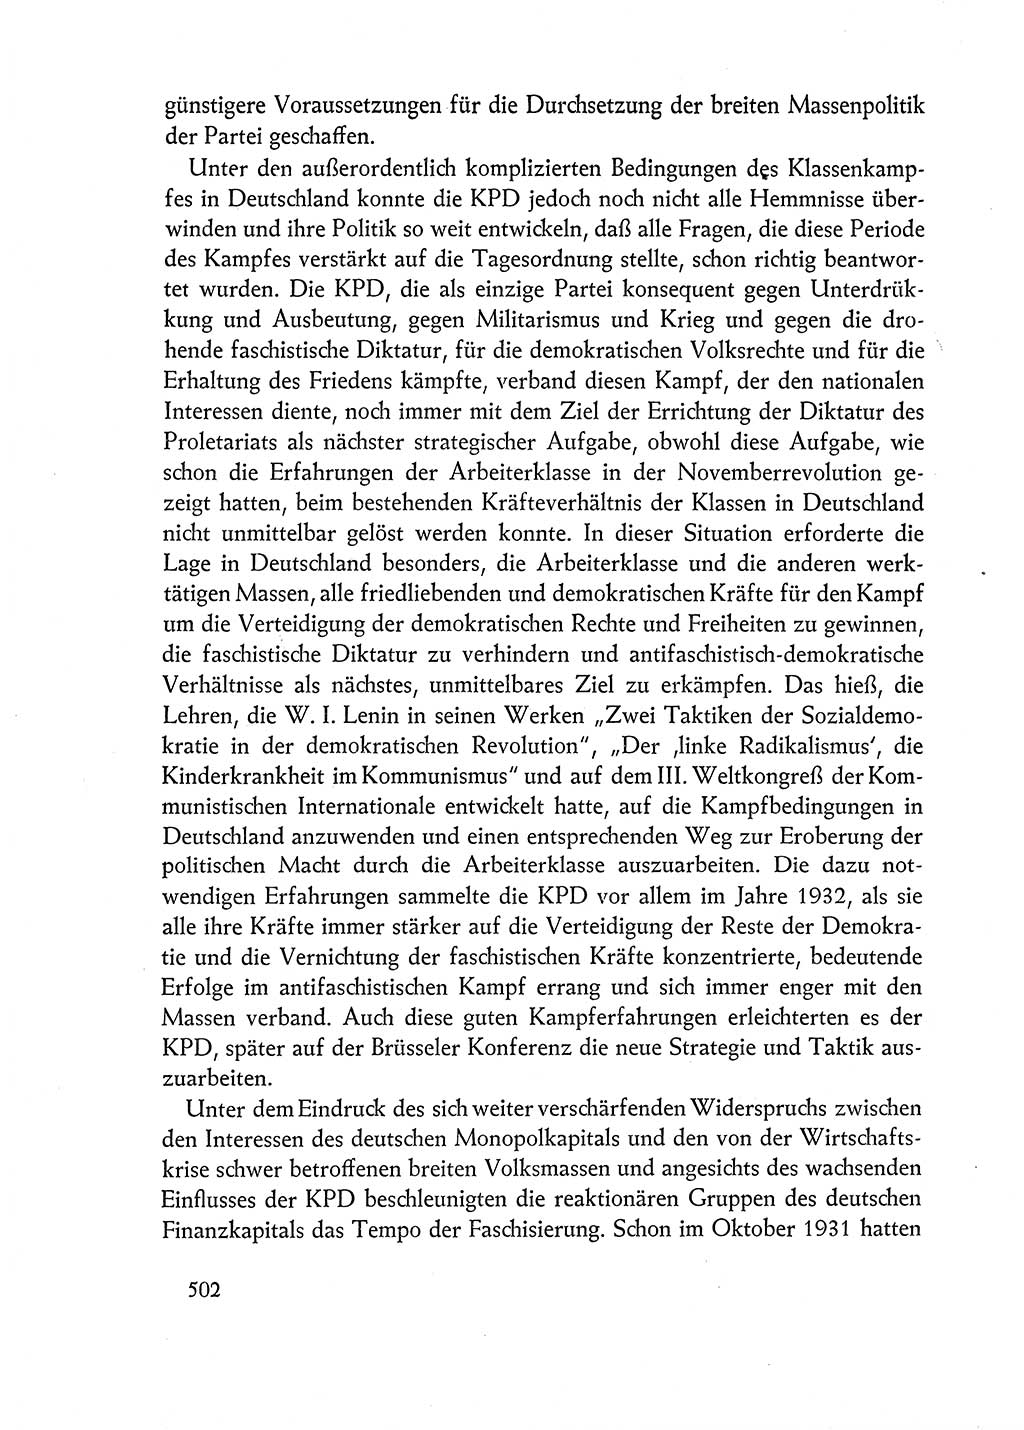 Dokumente der Sozialistischen Einheitspartei Deutschlands (SED) [Deutsche Demokratische Republik (DDR)] 1962-1963, Seite 502 (Dok. SED DDR 1962-1963, S. 502)